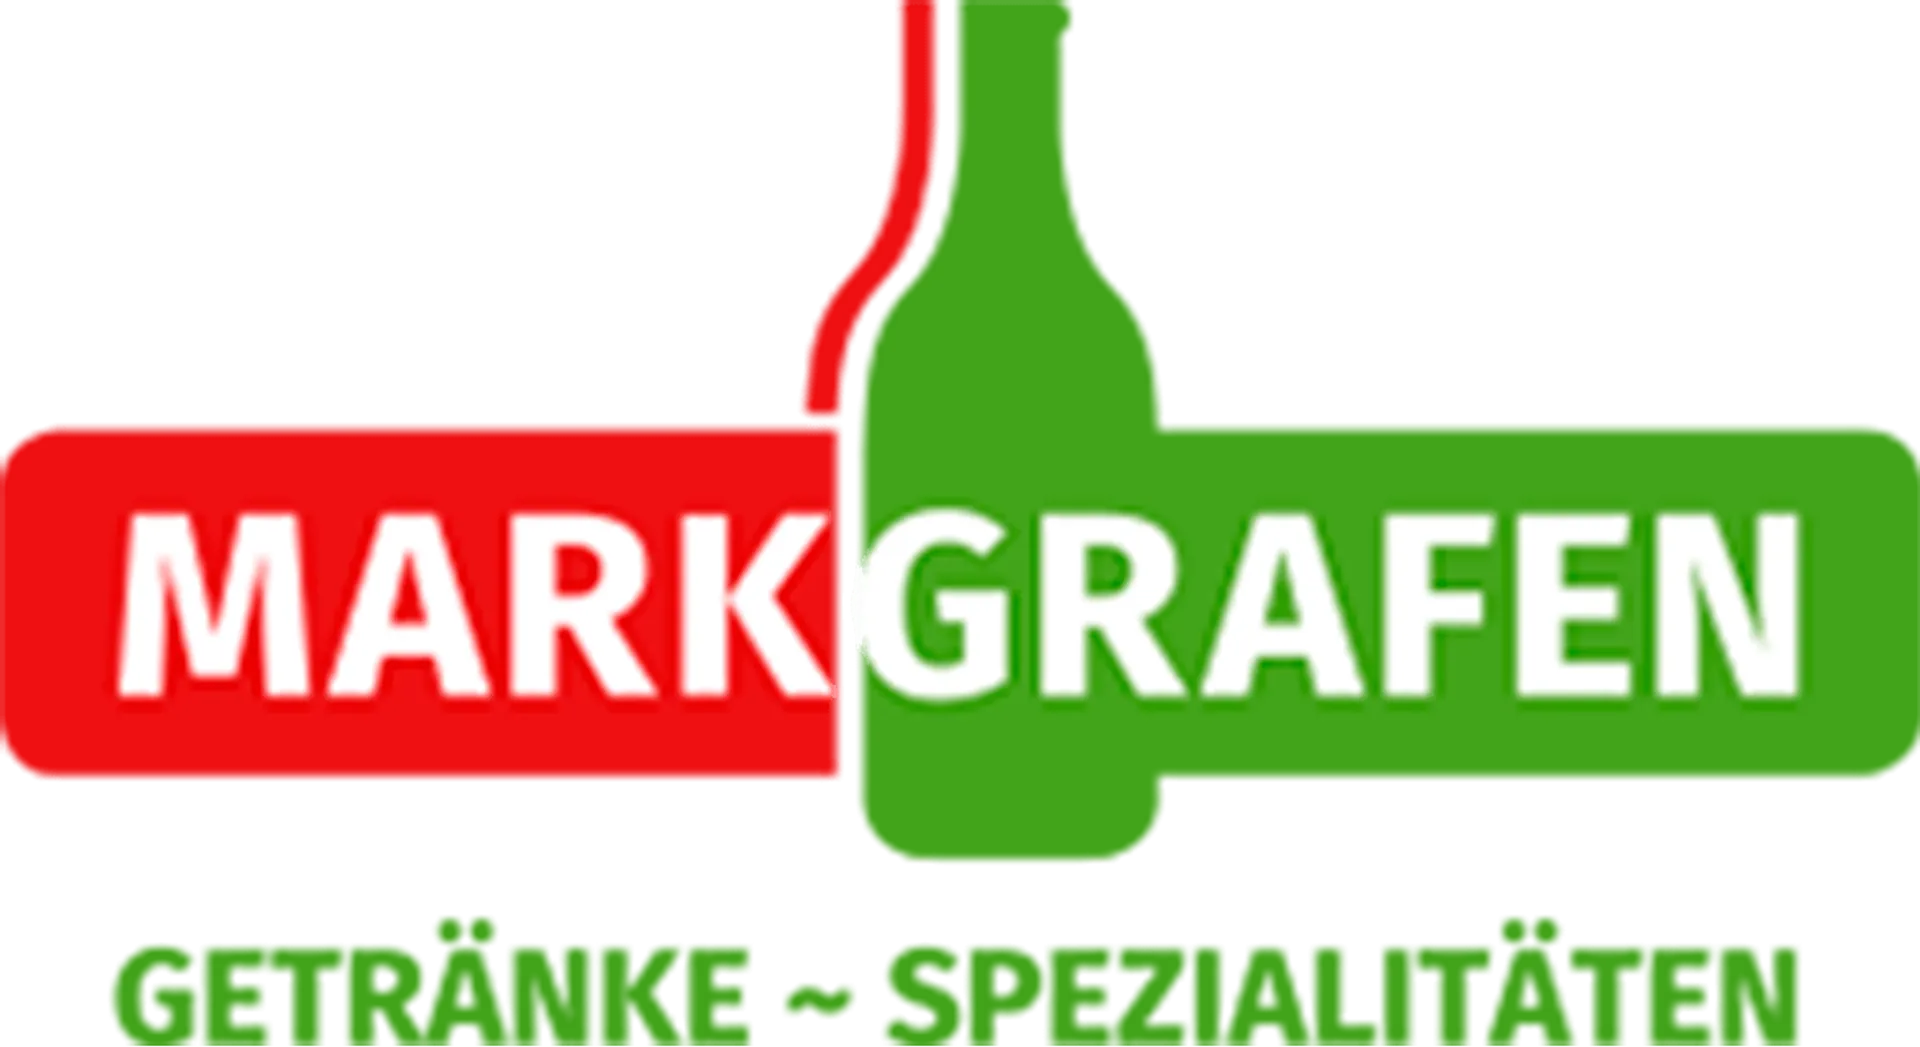 MARKGRAFEN logo